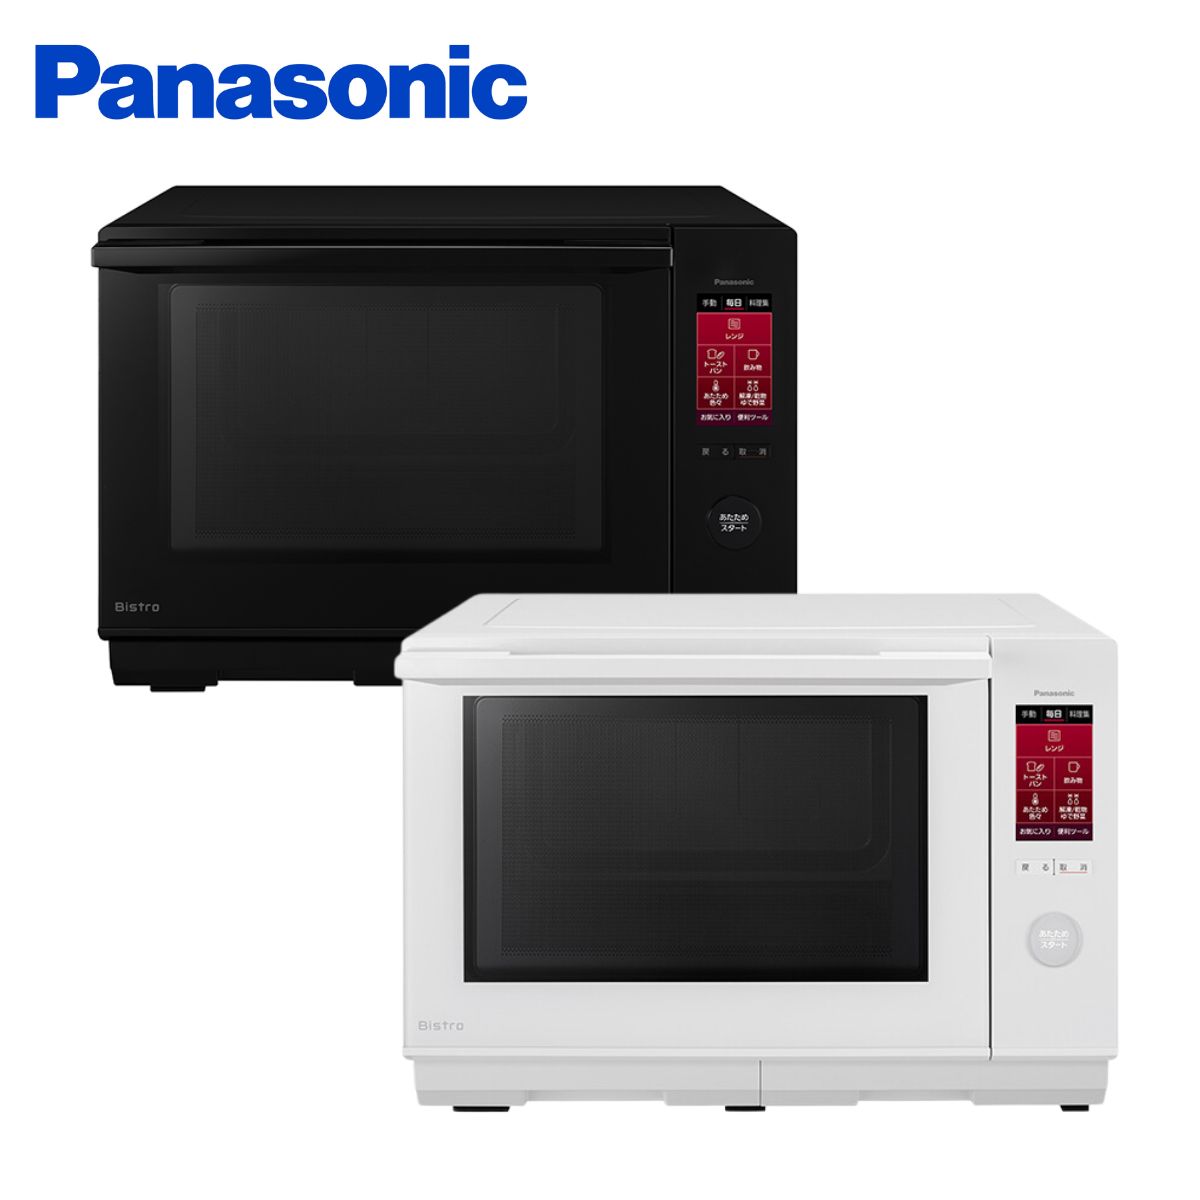 【Panasonic】スチームオーブンレンジ ビストロ NE-BS6A ブラック(K) / ホワイト(W)